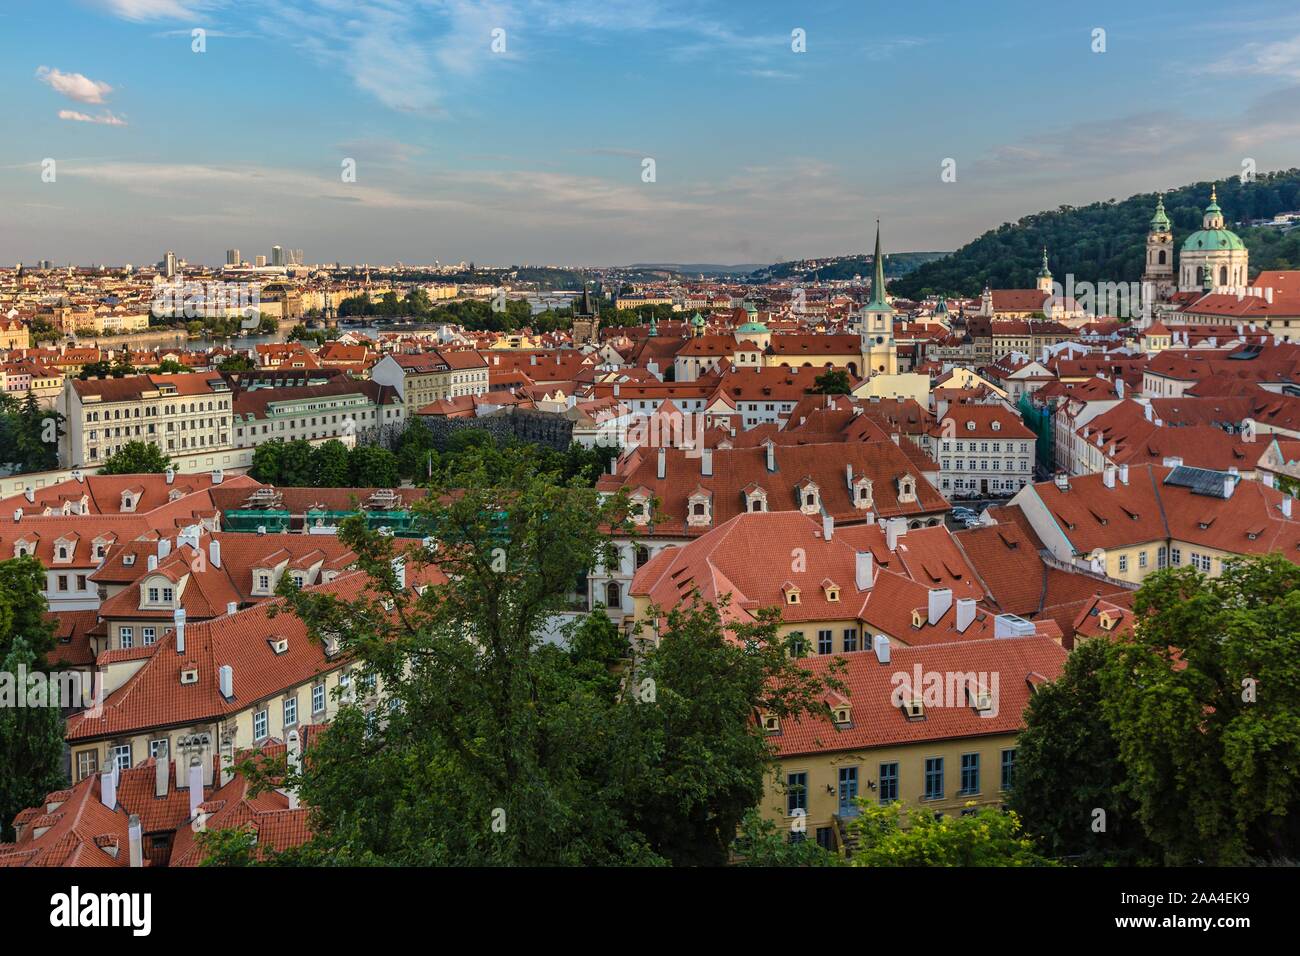 Prague, République tchèque - 20 juillet 2019 - Vue sur les toits rouges, paysage urbain avec des églises et bâtiments historiques. Soirée bleu ciel avec des nuages. Banque D'Images